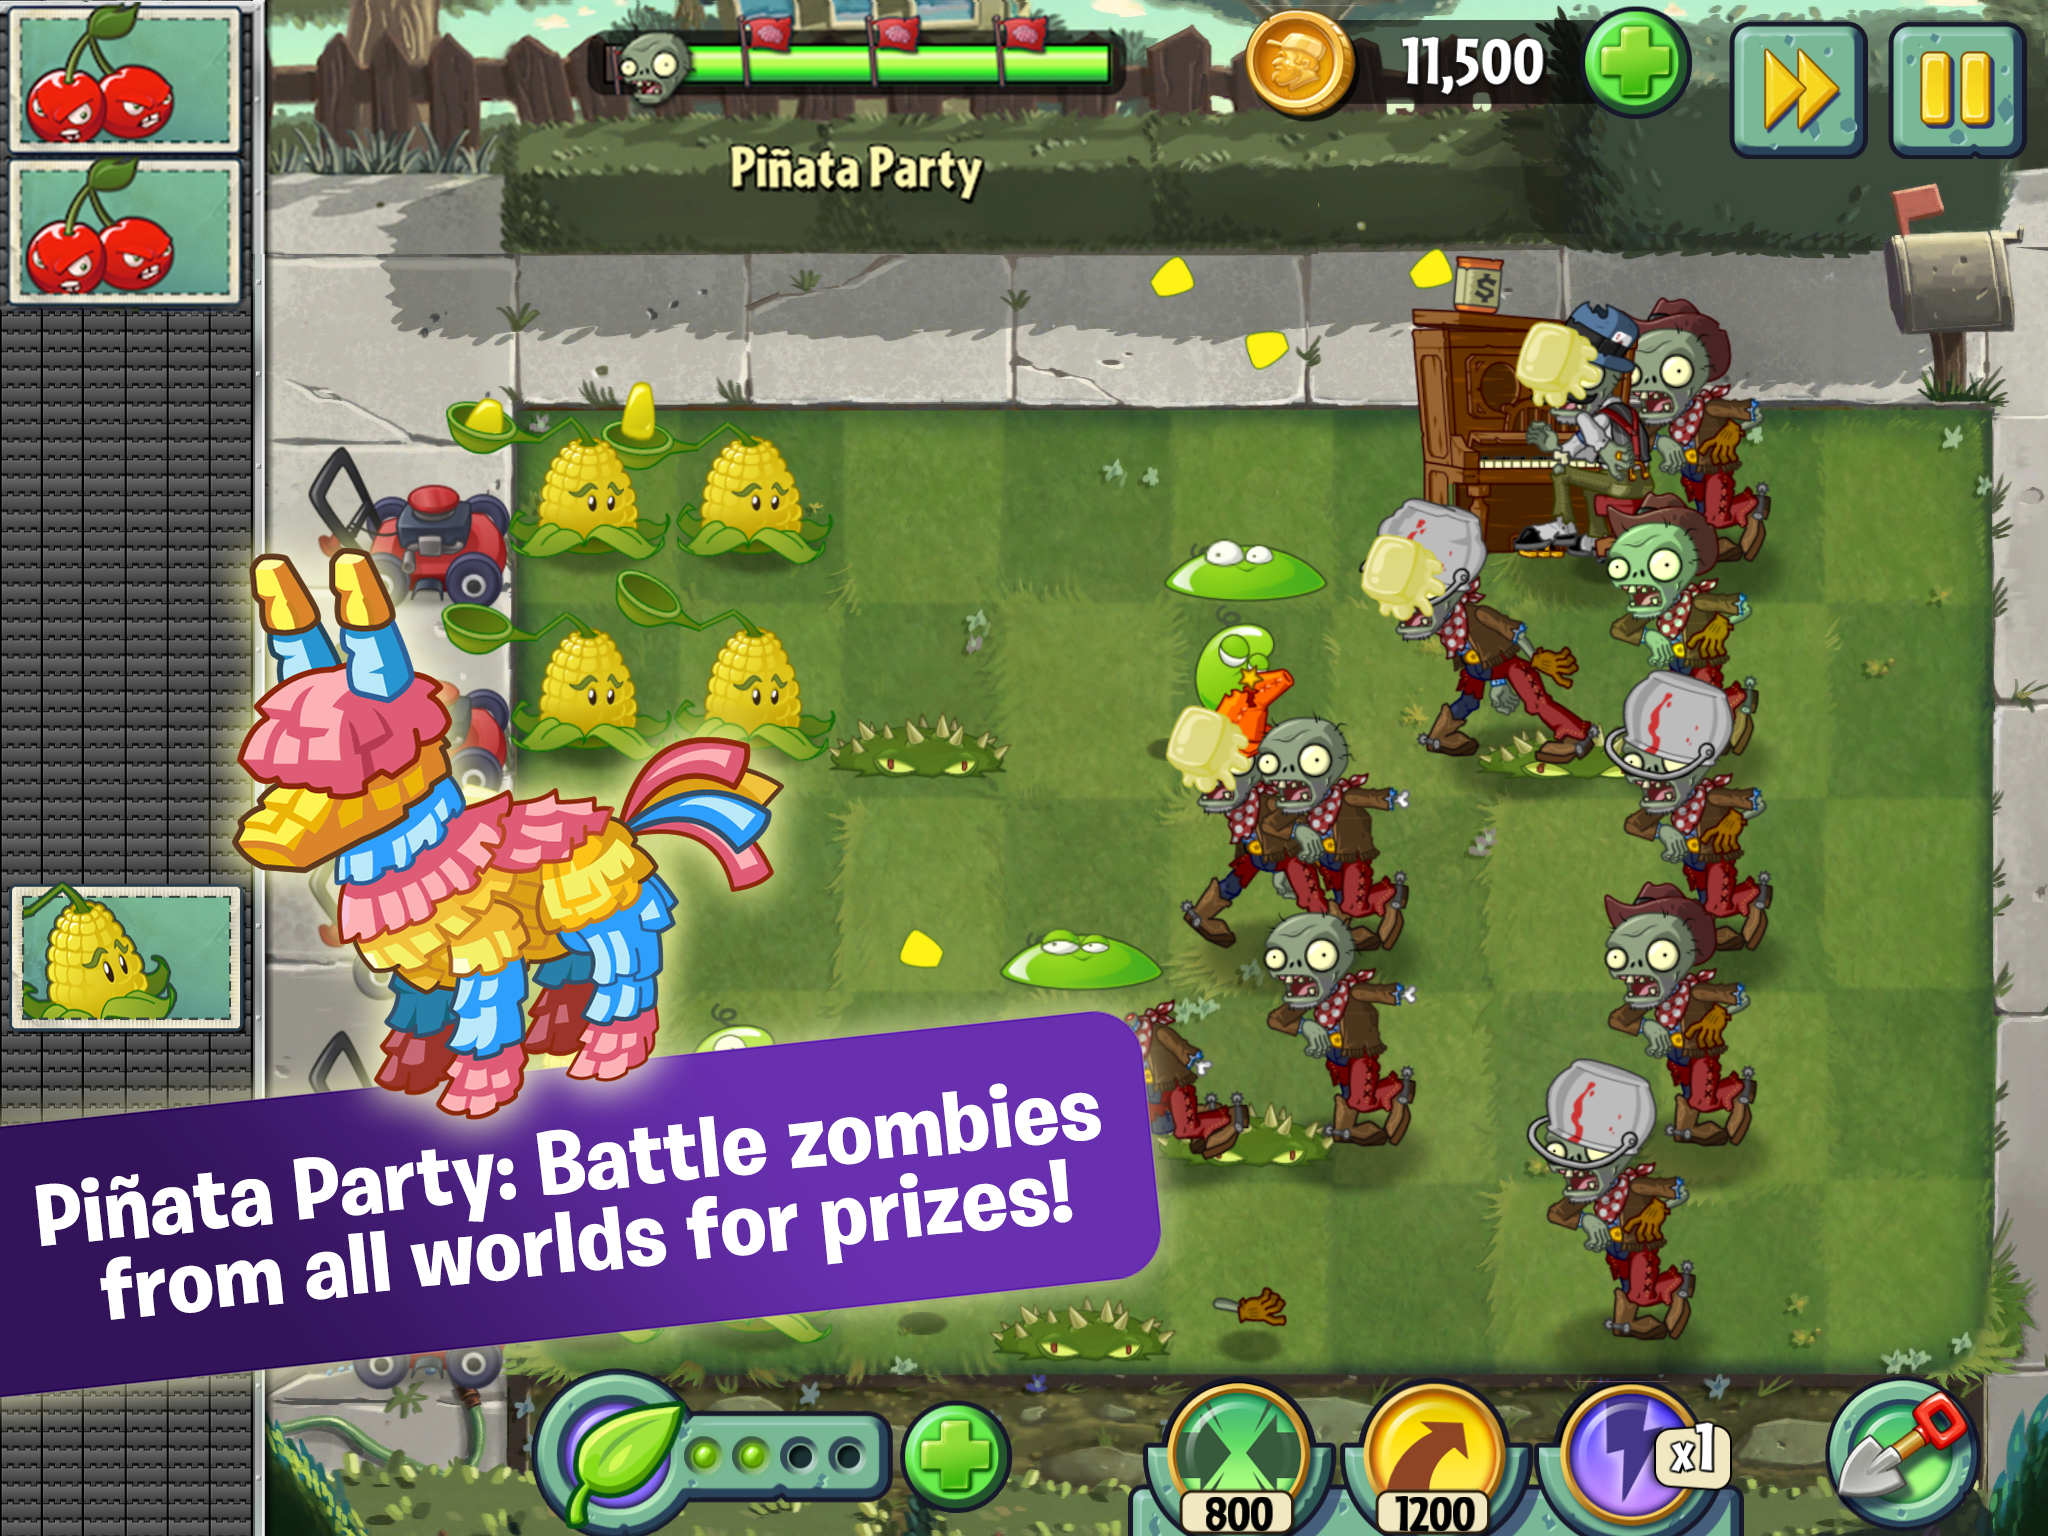 plants vs zombies 2 online free popcap